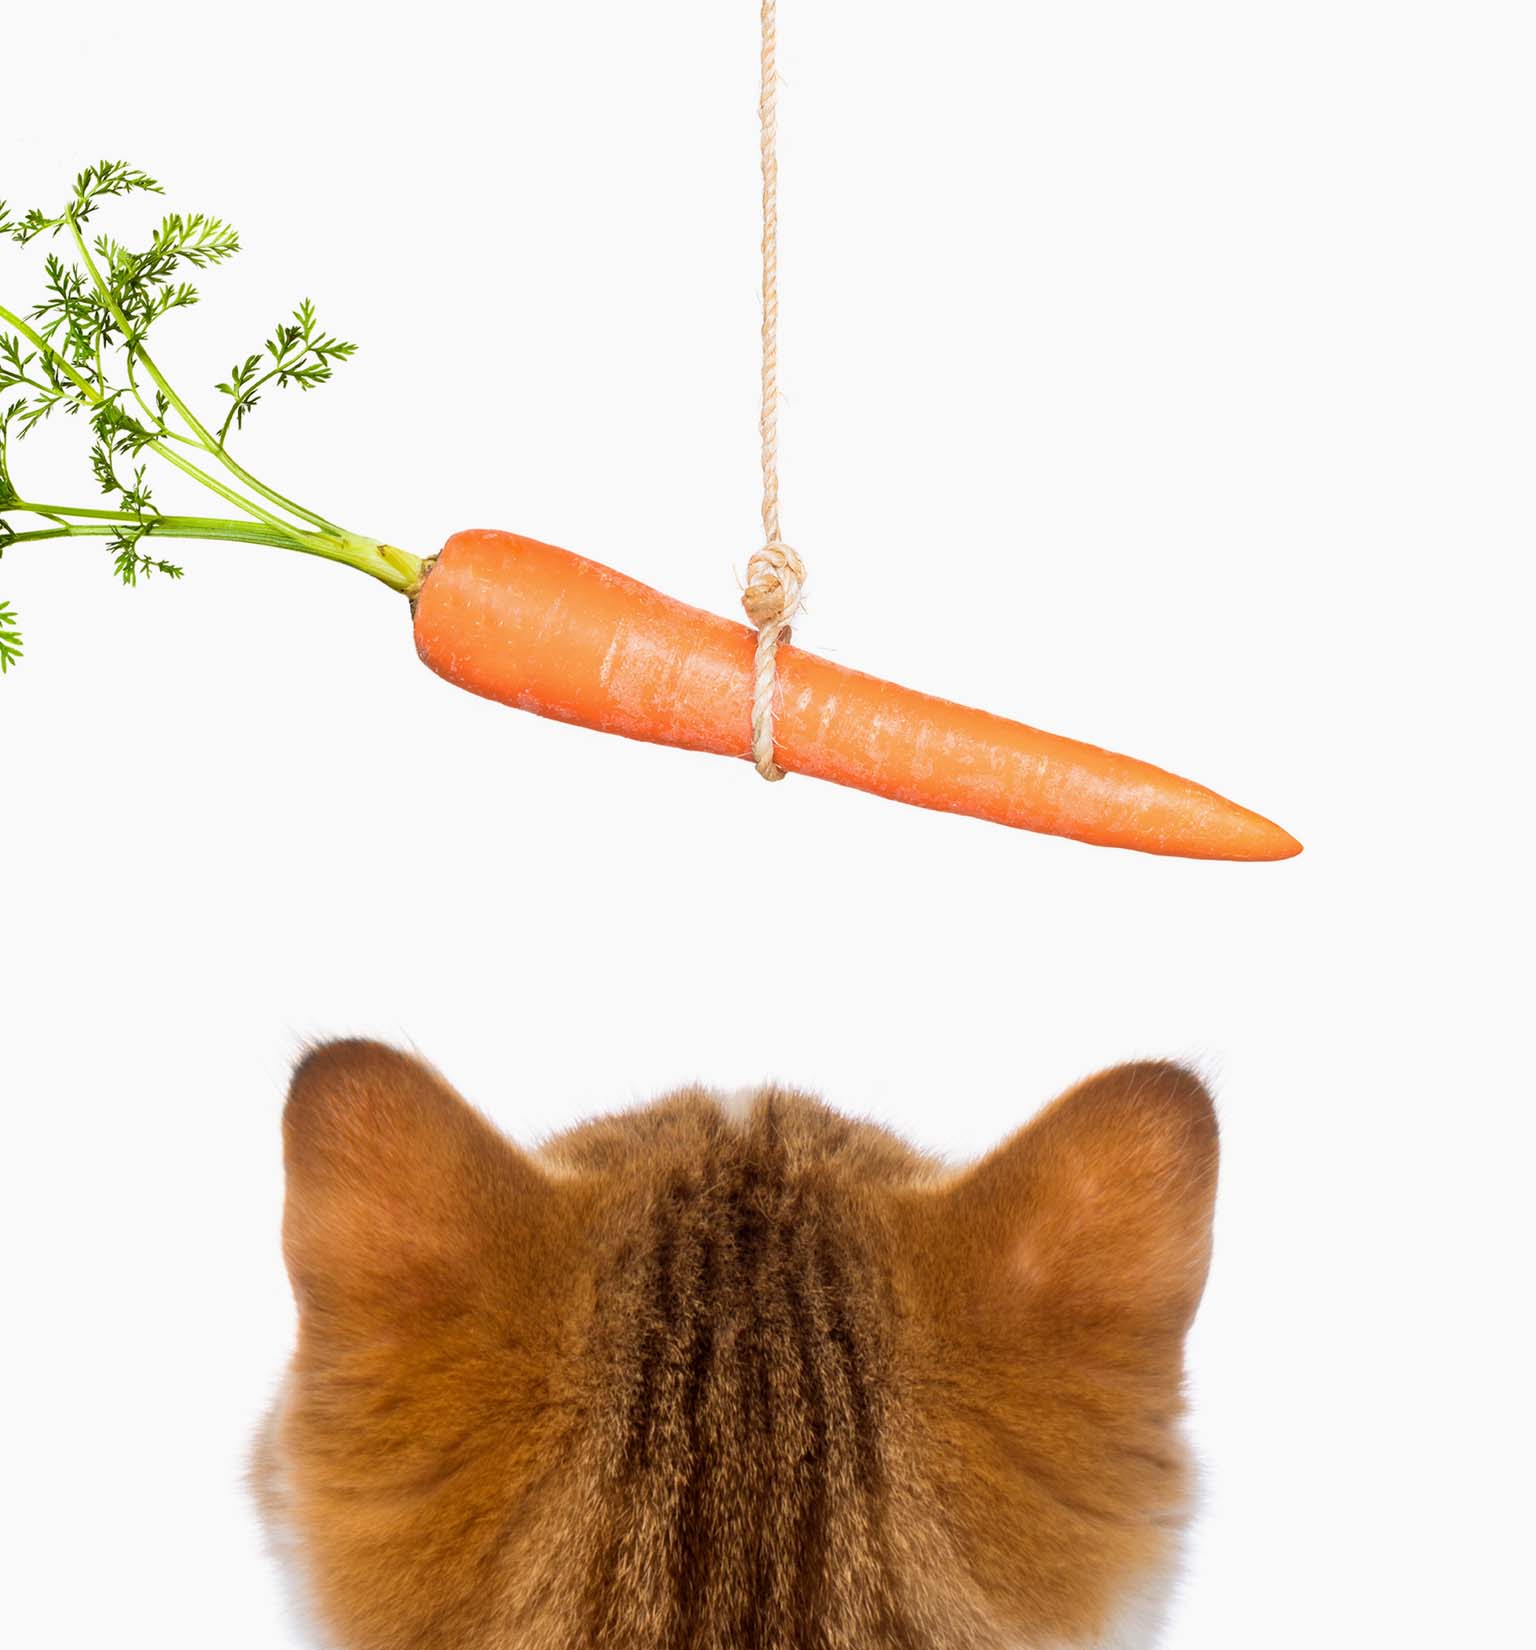 Les carottes sont-elles bonnes pour mon chat ?